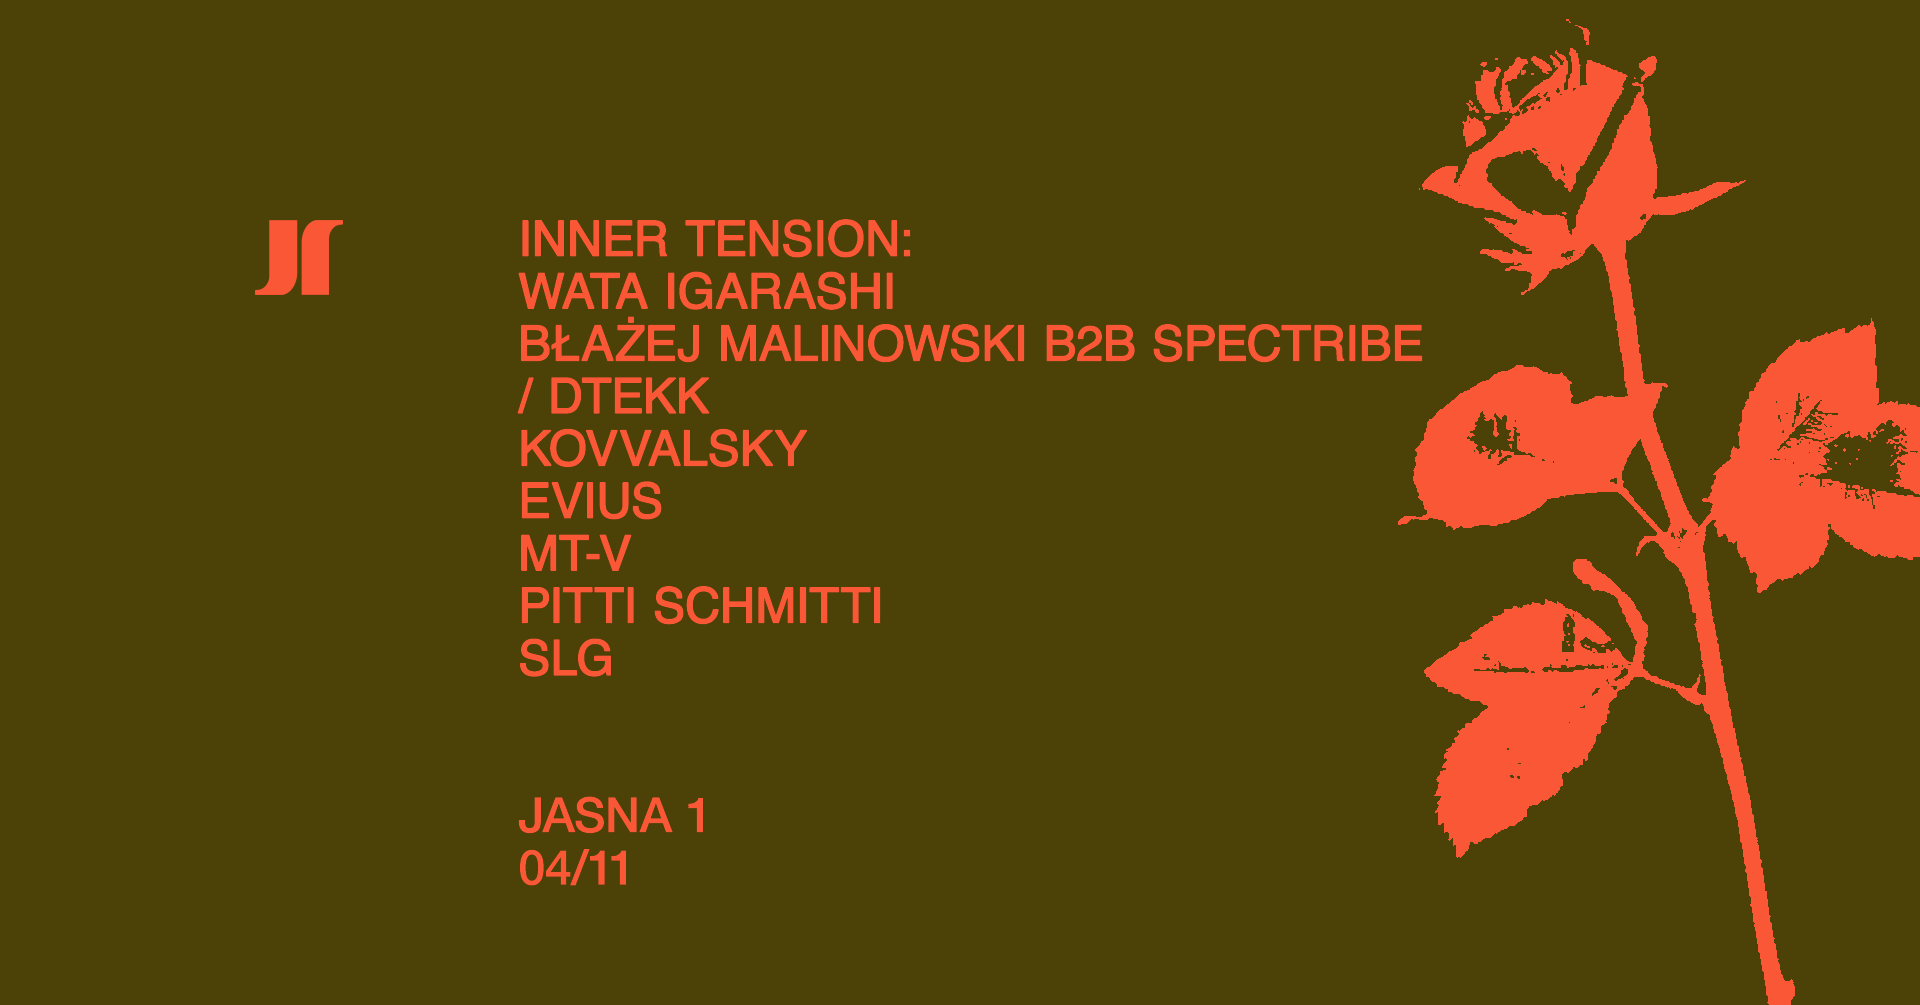 J1 - Inner Tension with Wata Igarashi, Blazej Malinowski B2B Spectribe / dtekk, Kovvalsky  - Página frontal